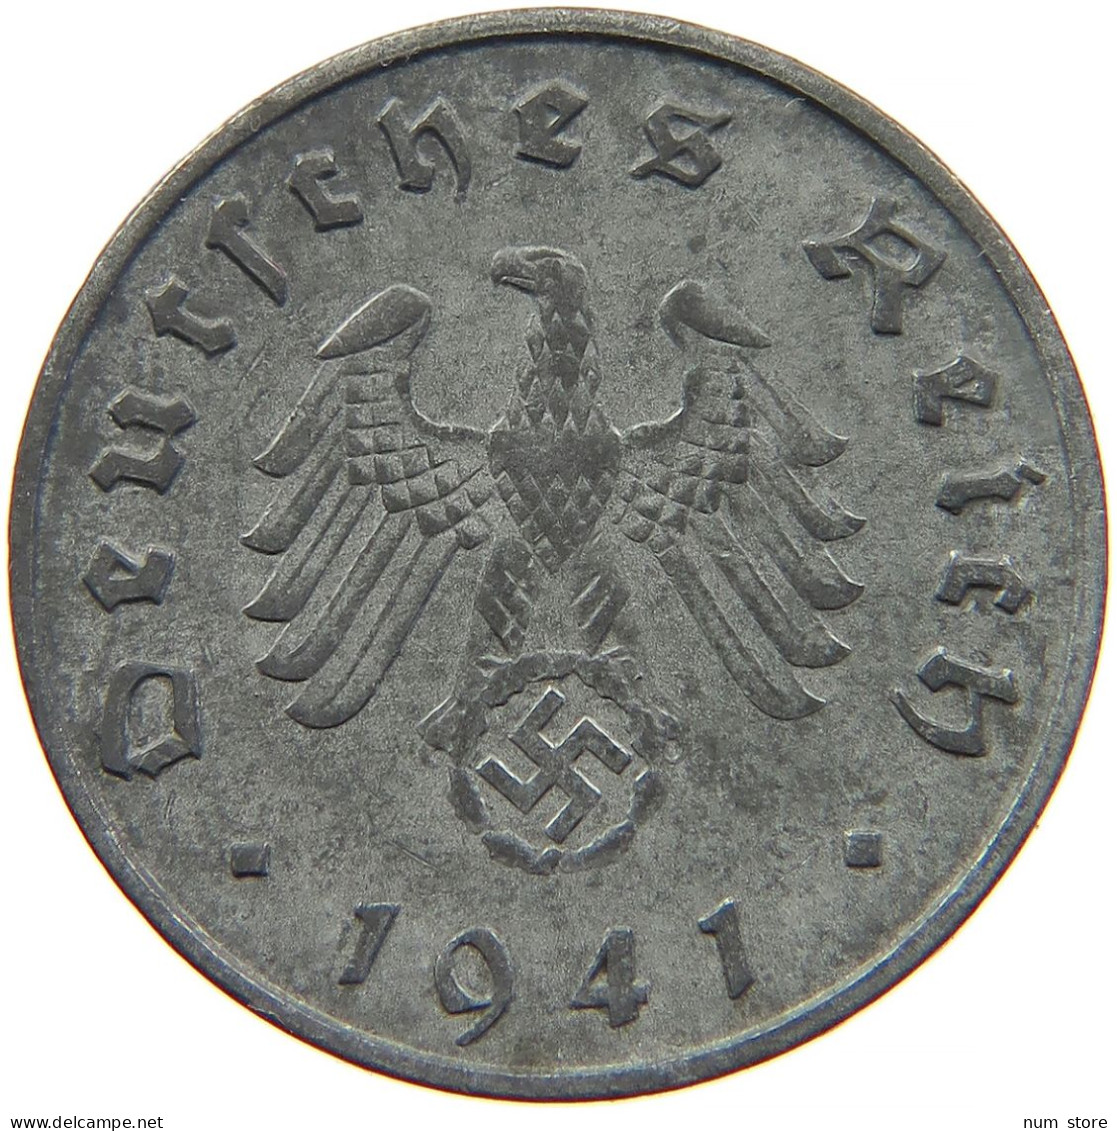 GERMANY 10 REICHSPFENNIG 1941 F #s095 0007 - 10 Reichspfennig